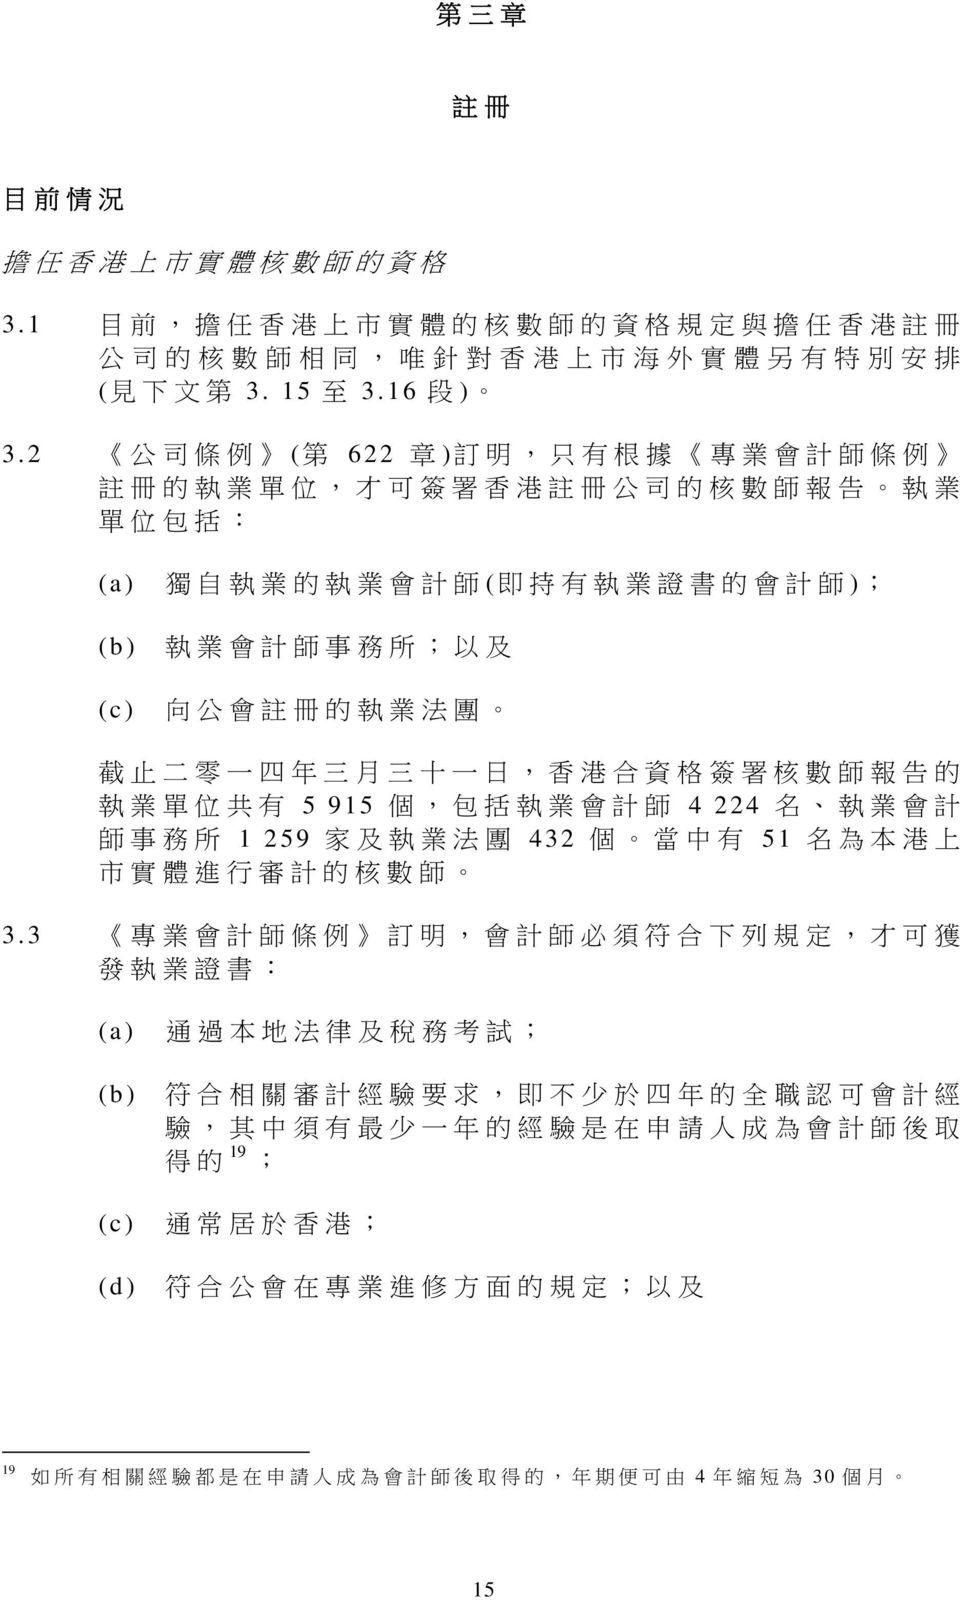 冊 的 執 業 法 團 截 止 二 零 一 四 年 三 月 三 十 一 日, 香 港 合 資 格 簽 署 核 數 師 報 告 的 執 業 單 位 共 有 5 915 個, 包 括 執 業 會 計 師 4 224 名 執 業 會 計 師 事 務 所 1 259 家 及 執 業 法 團 432 個 當 中 有 51 名 為 本 港 上 市 實 體 進 行 審 計 的 核 數 師 3.